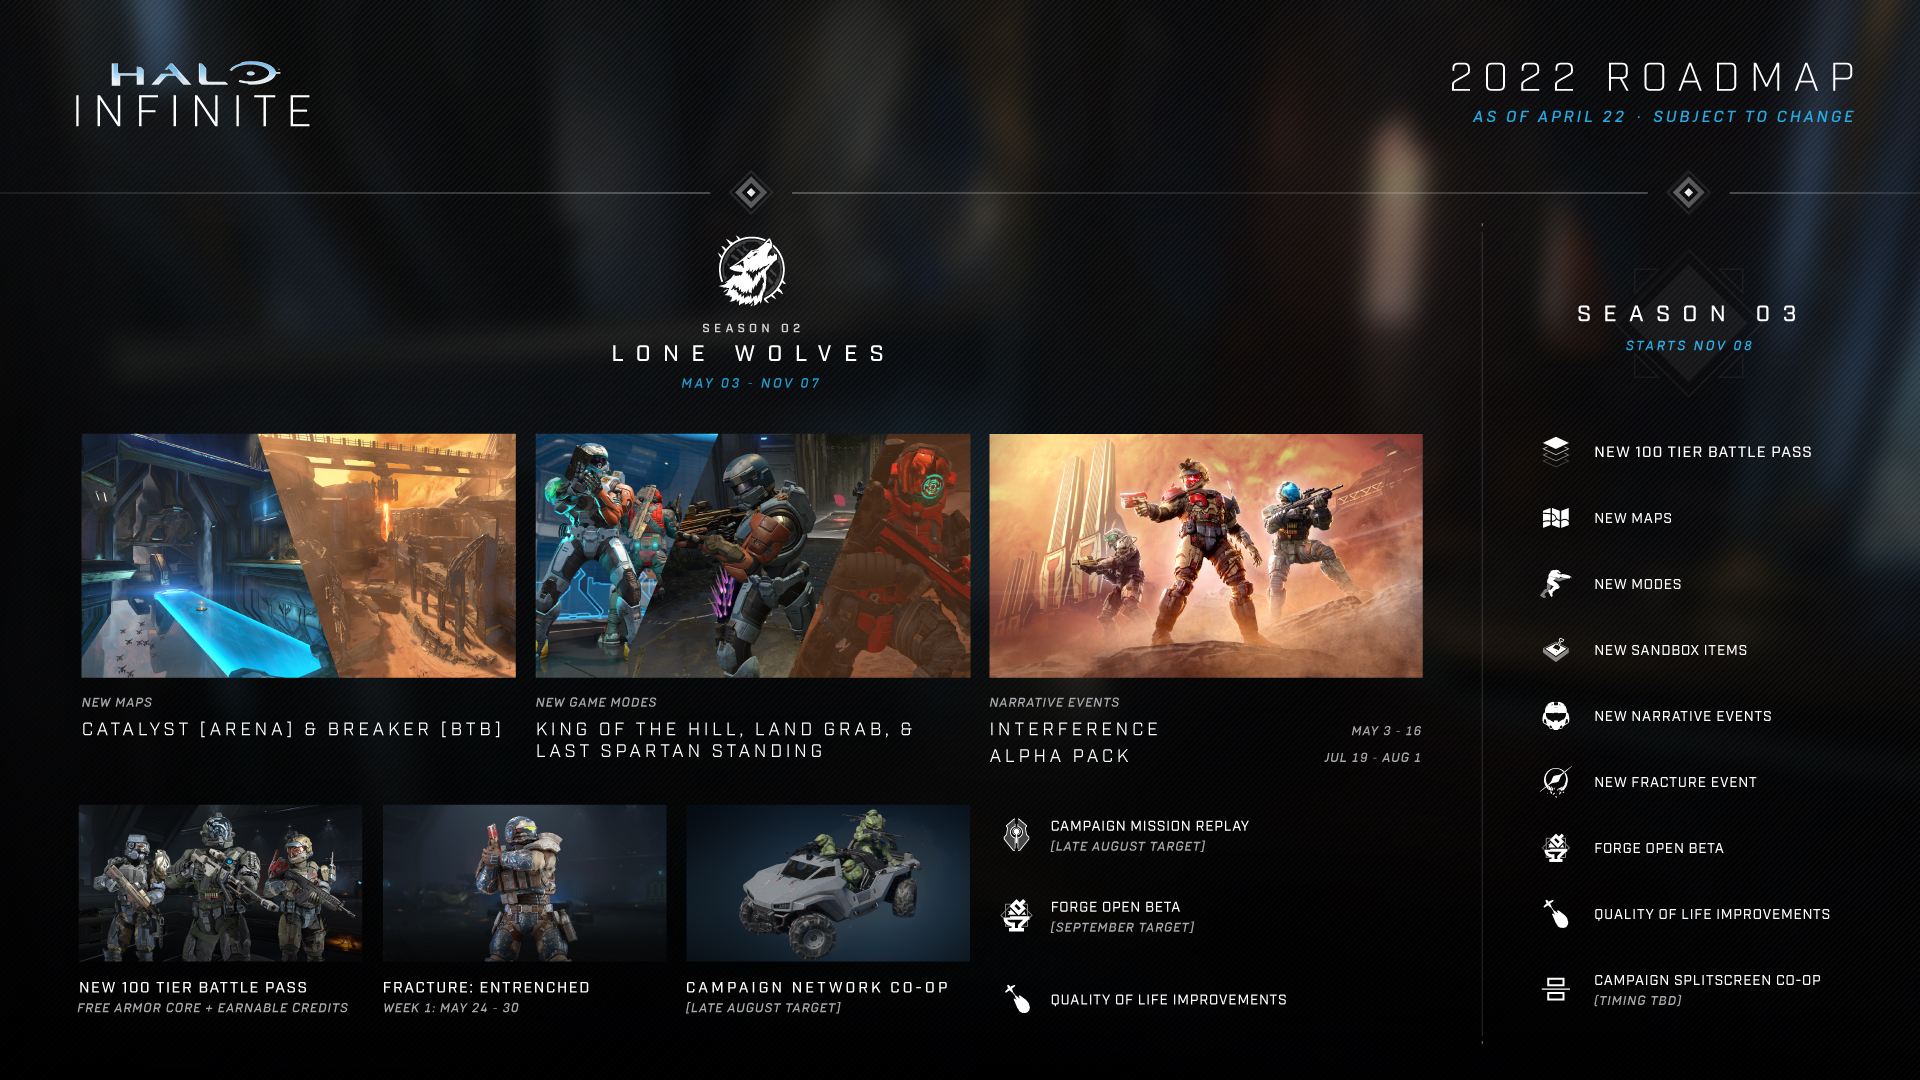 Halo Infinite's 2022 roadmap as of April 22